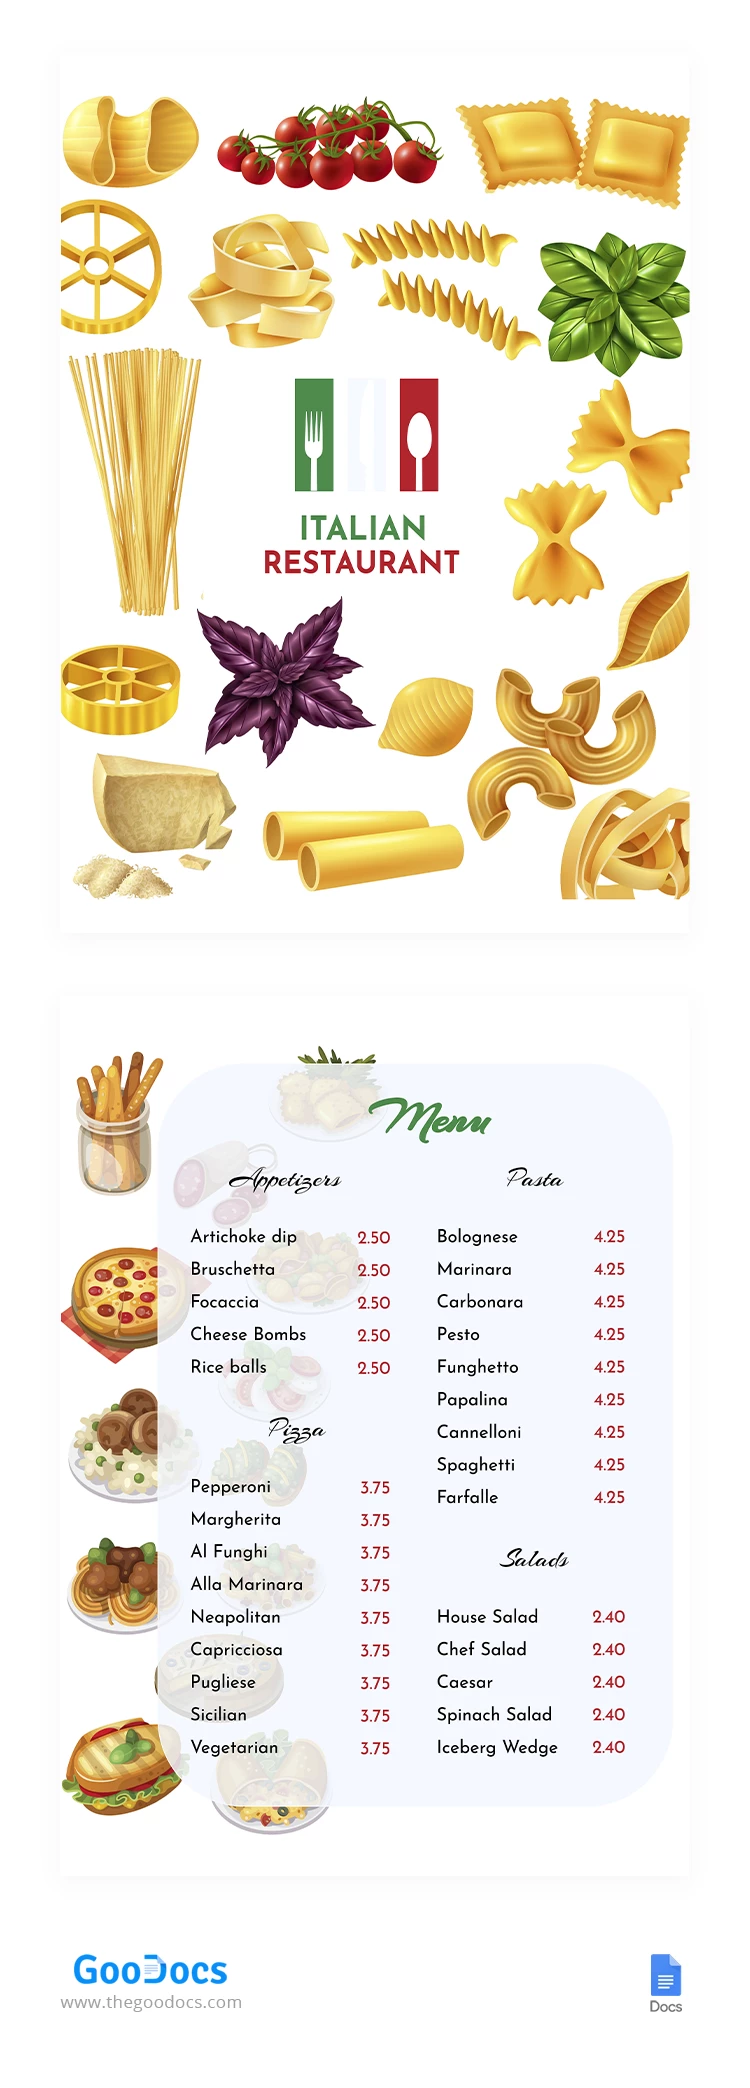 Menu del ristorante italiano - free Google Docs Template - 10064558